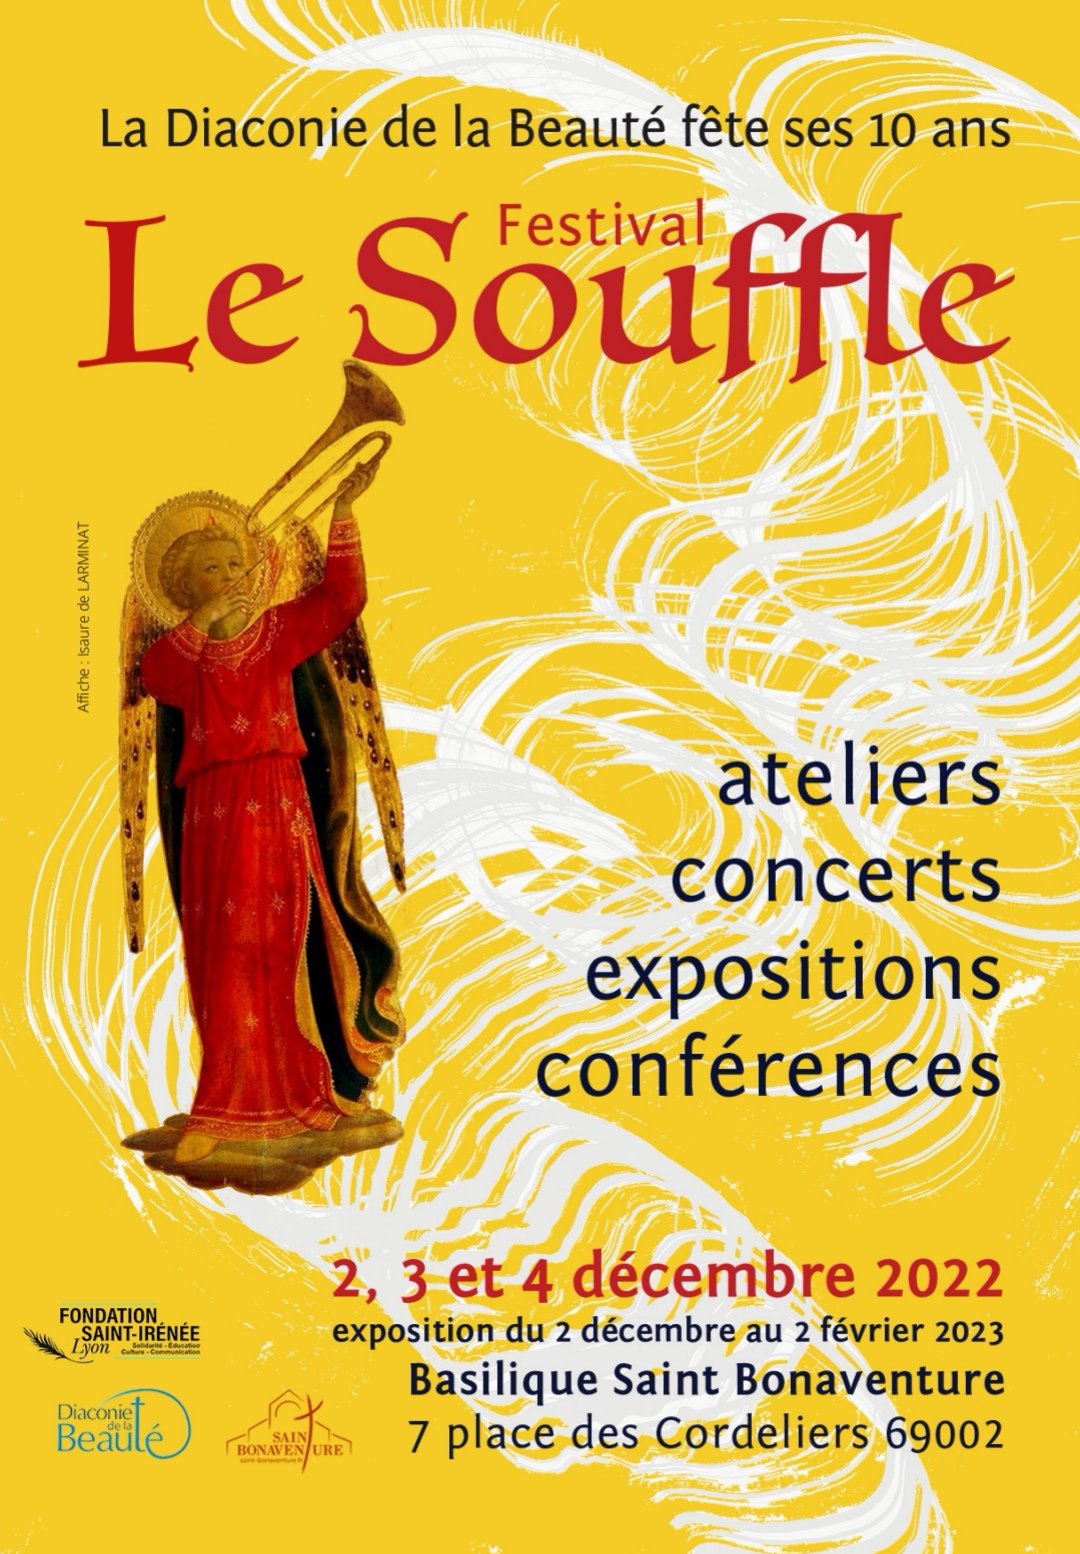 Festival-diaconie-de-la-beauté-Lyon-décembre2022(1).jpg